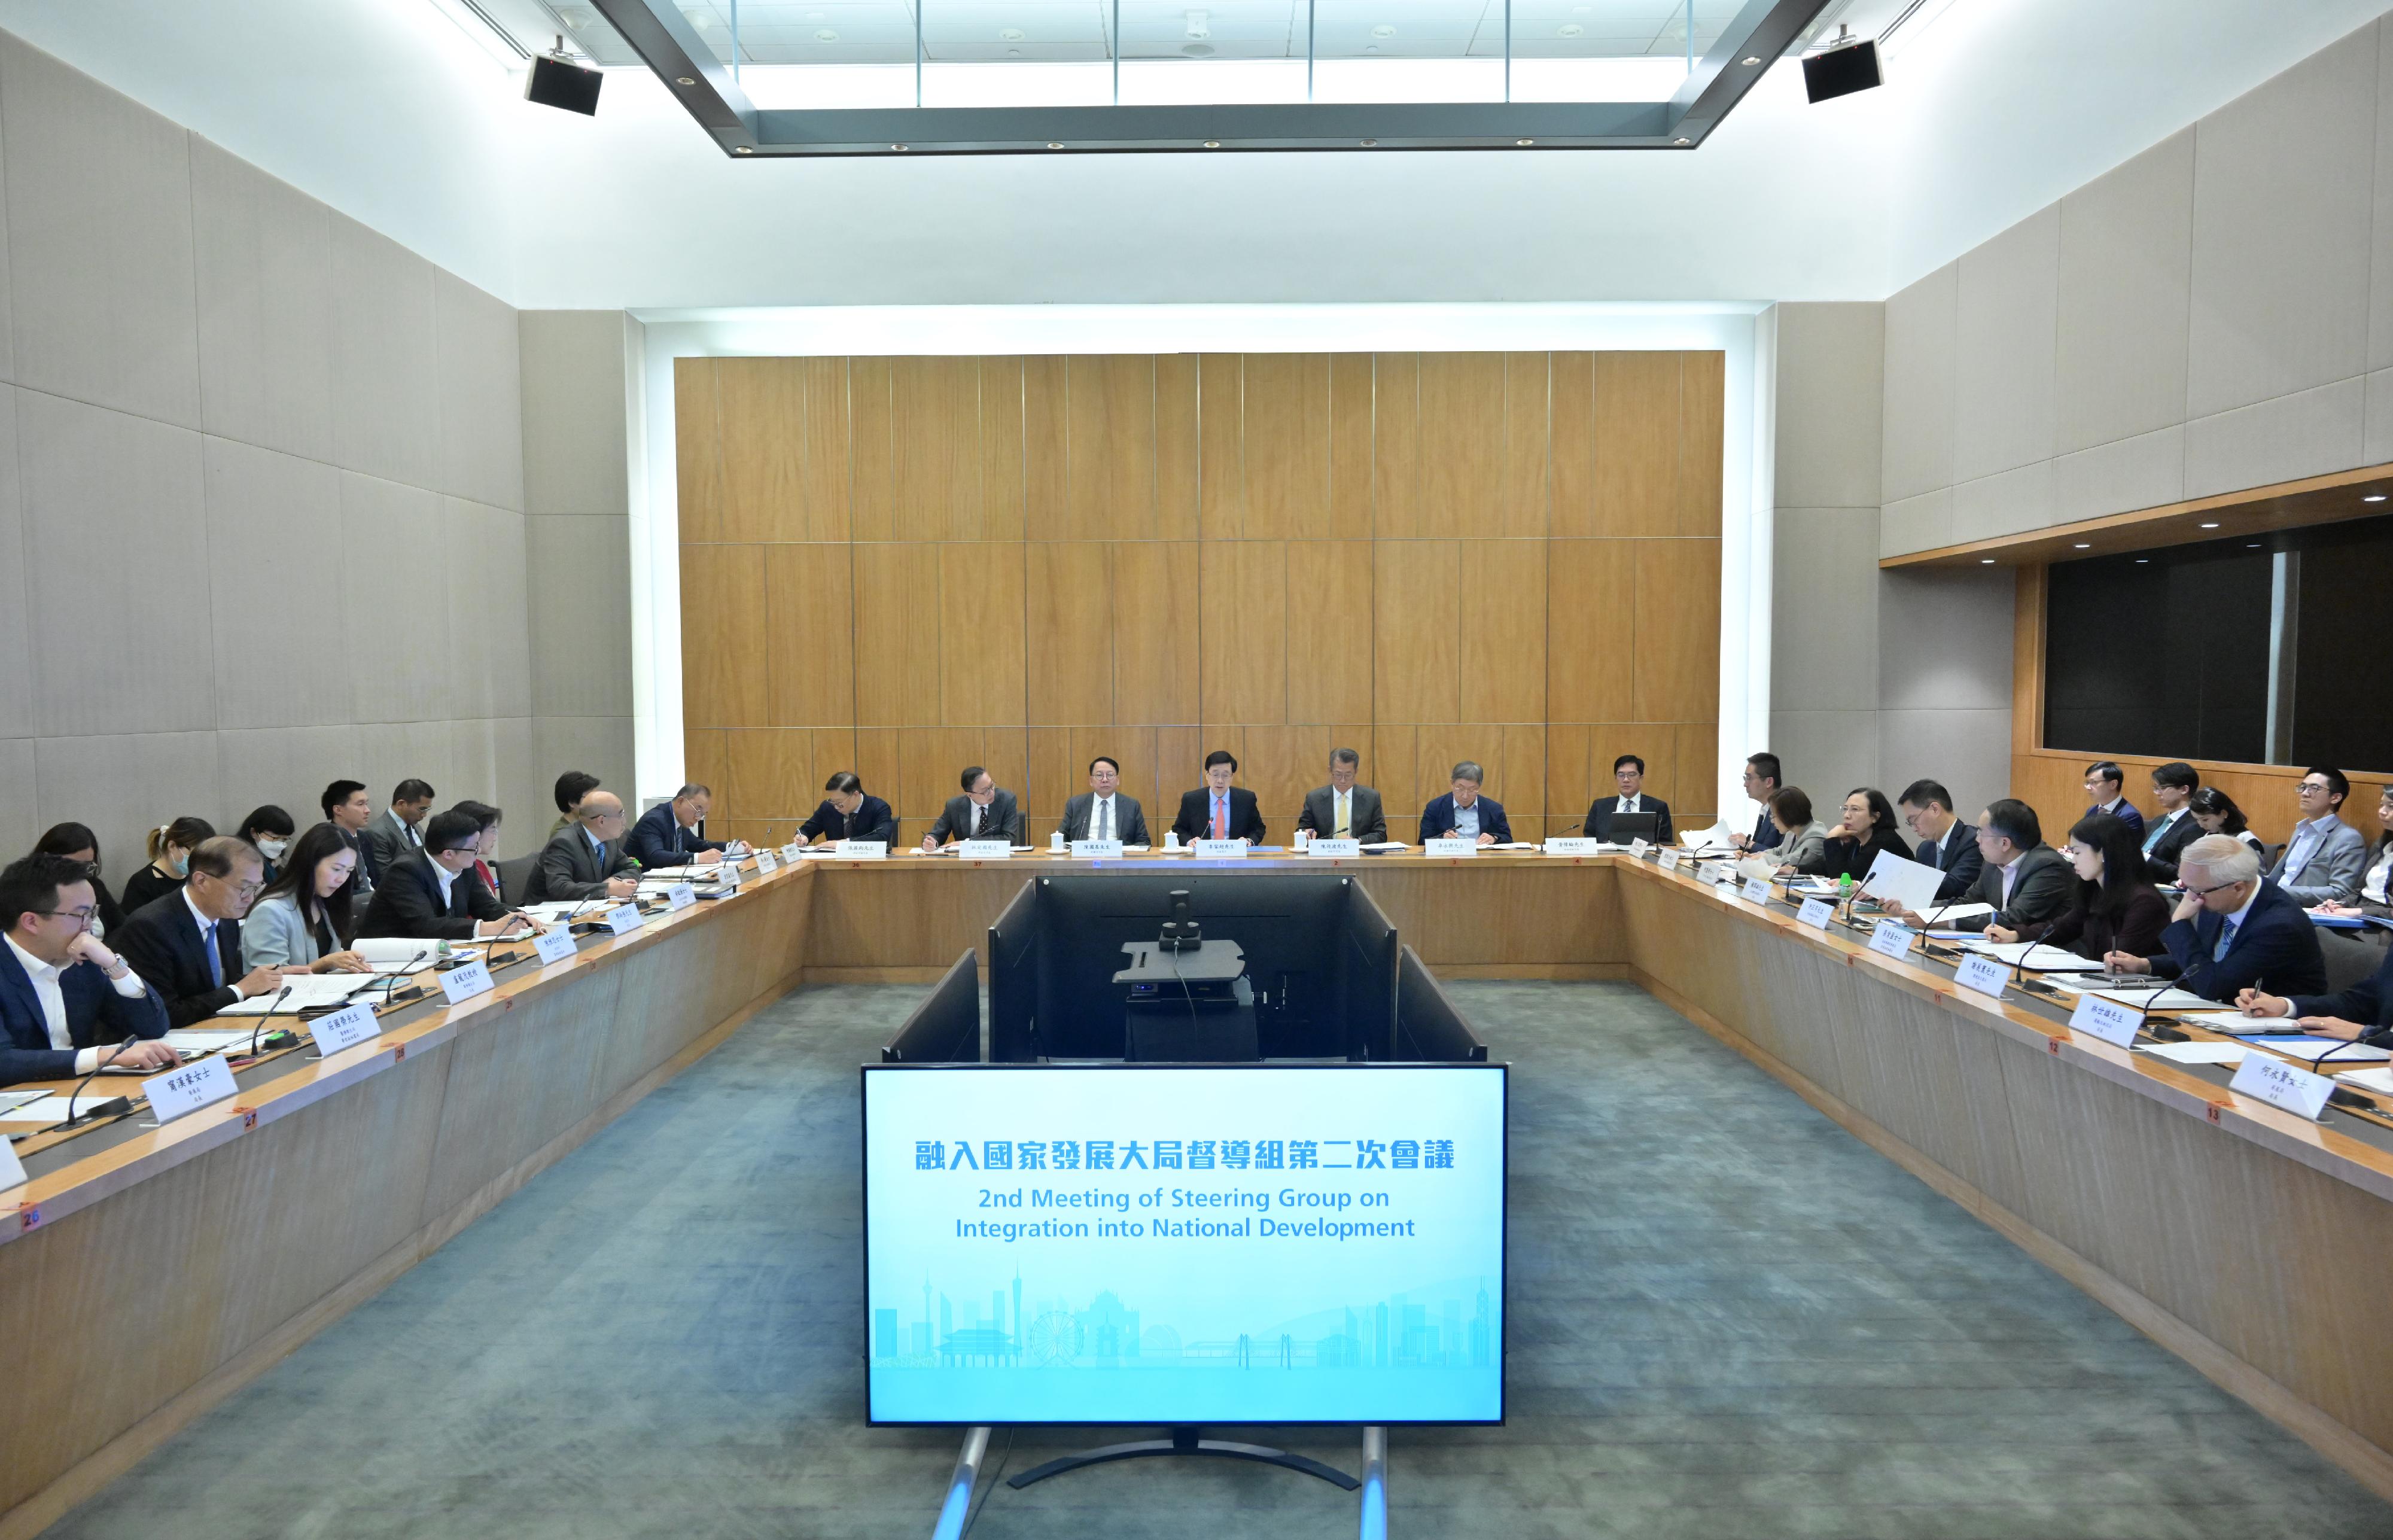 行政長官李家超今日（三月二十二日）主持「融入國家發展大局督導組」第二次會議。

